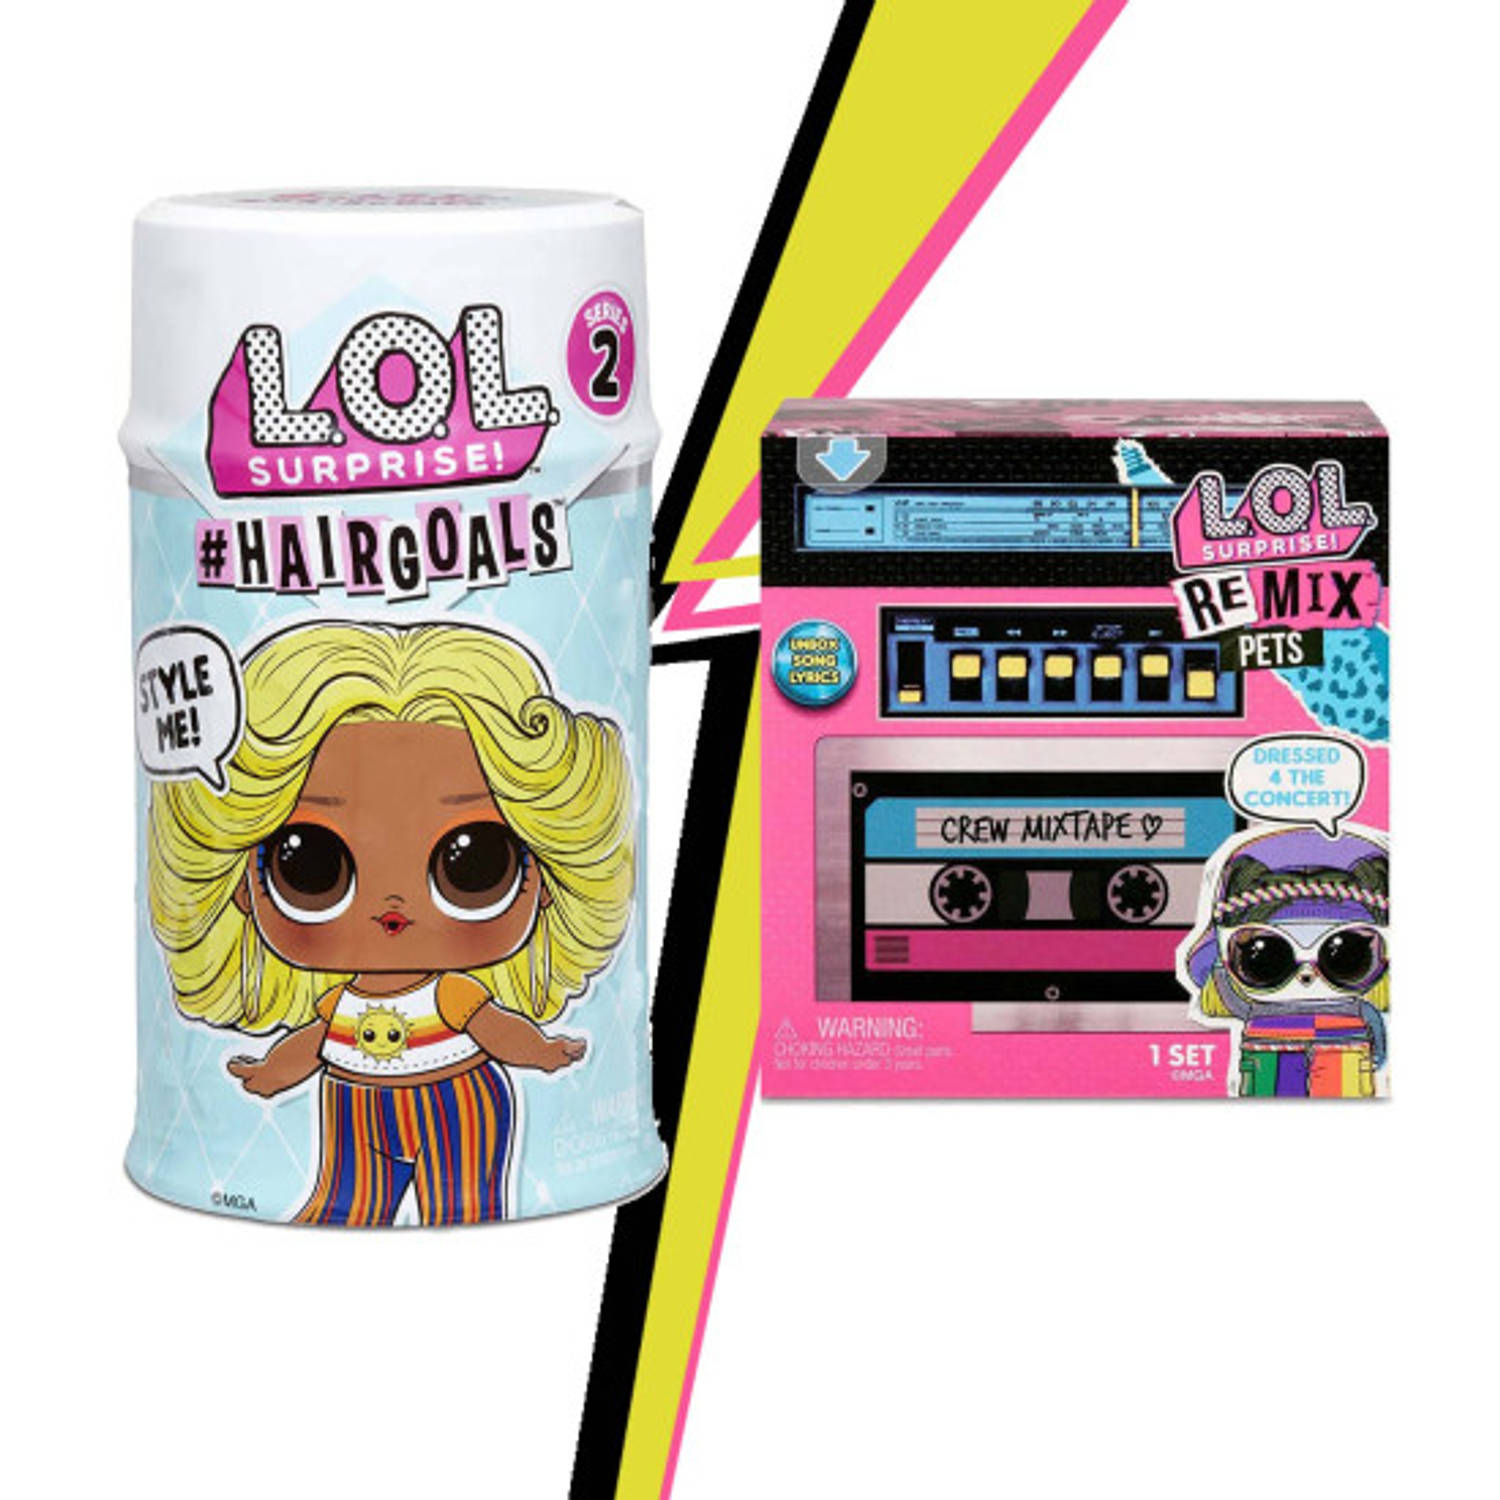 L.O.L. Surprise! Remix Pets + Hairgoals 2.0 - Minipop